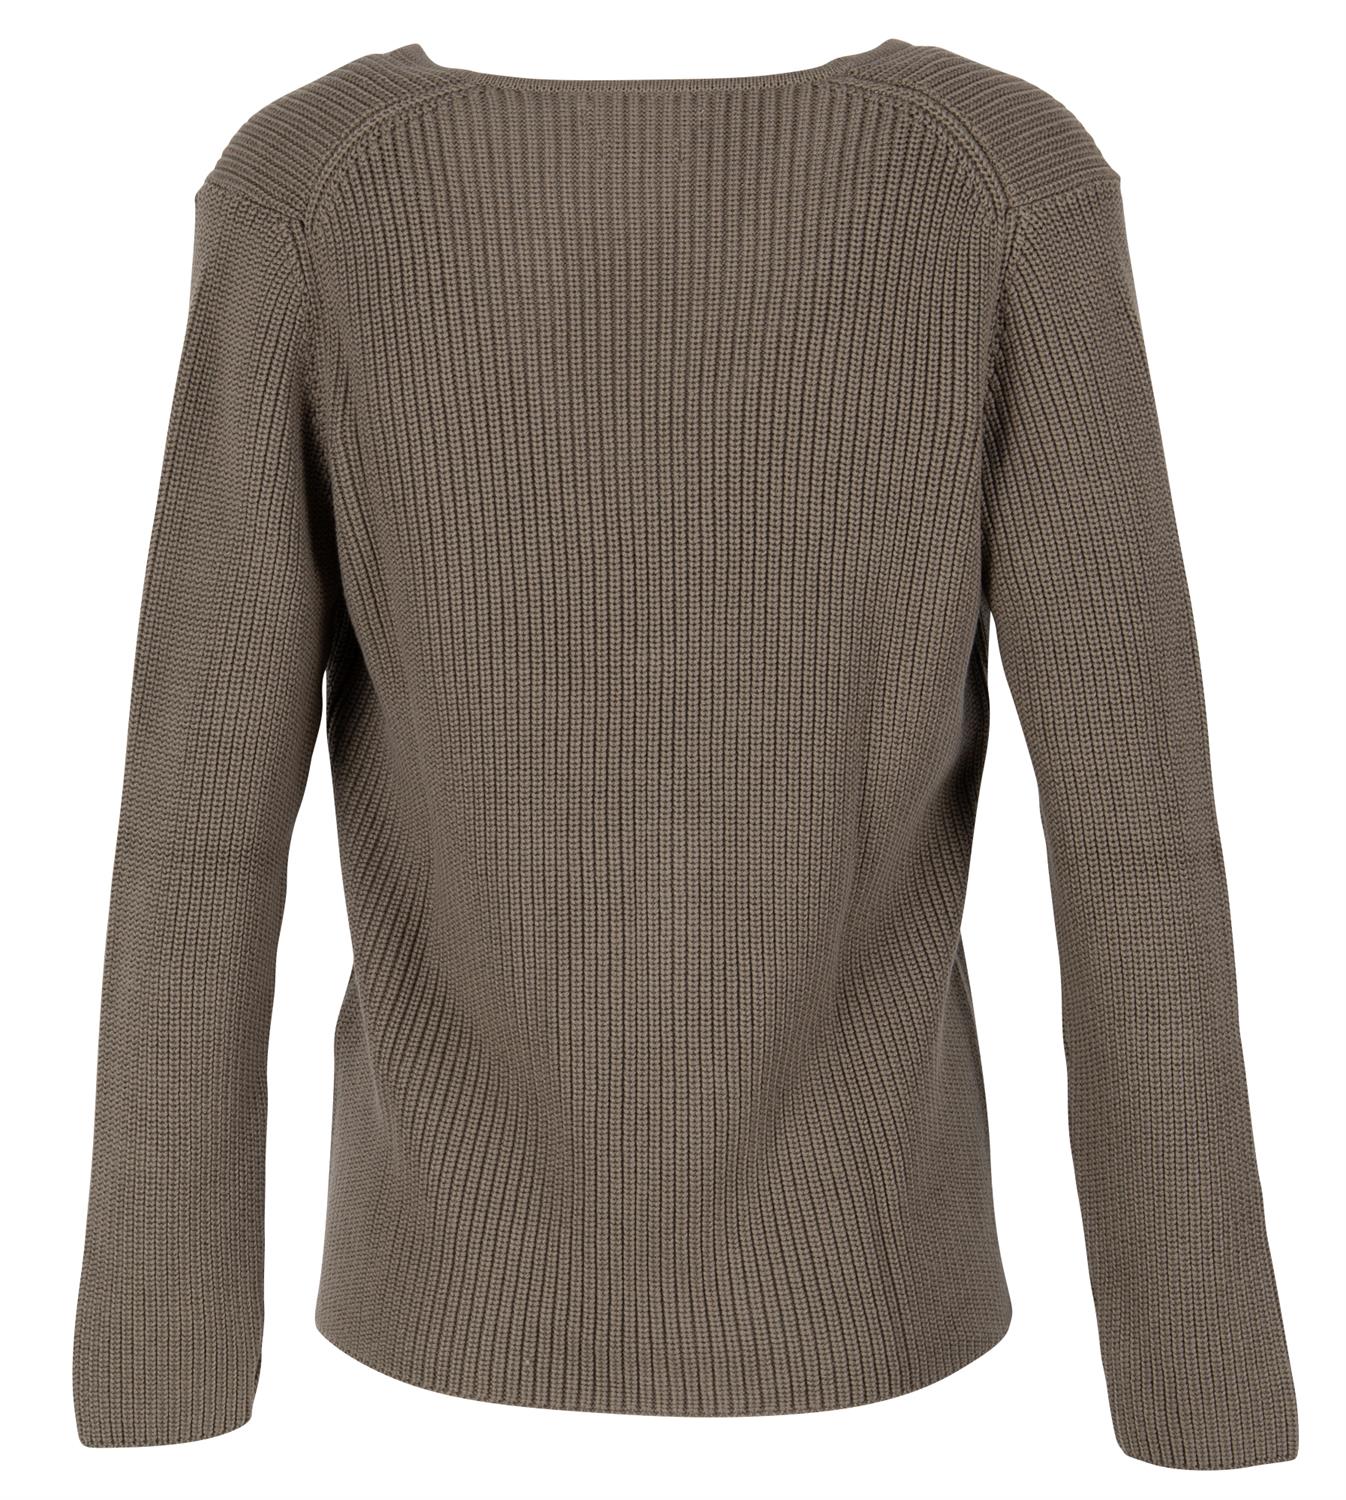 Brax Damen Pullover Style ANIQUE khaki bequem online kaufen bei